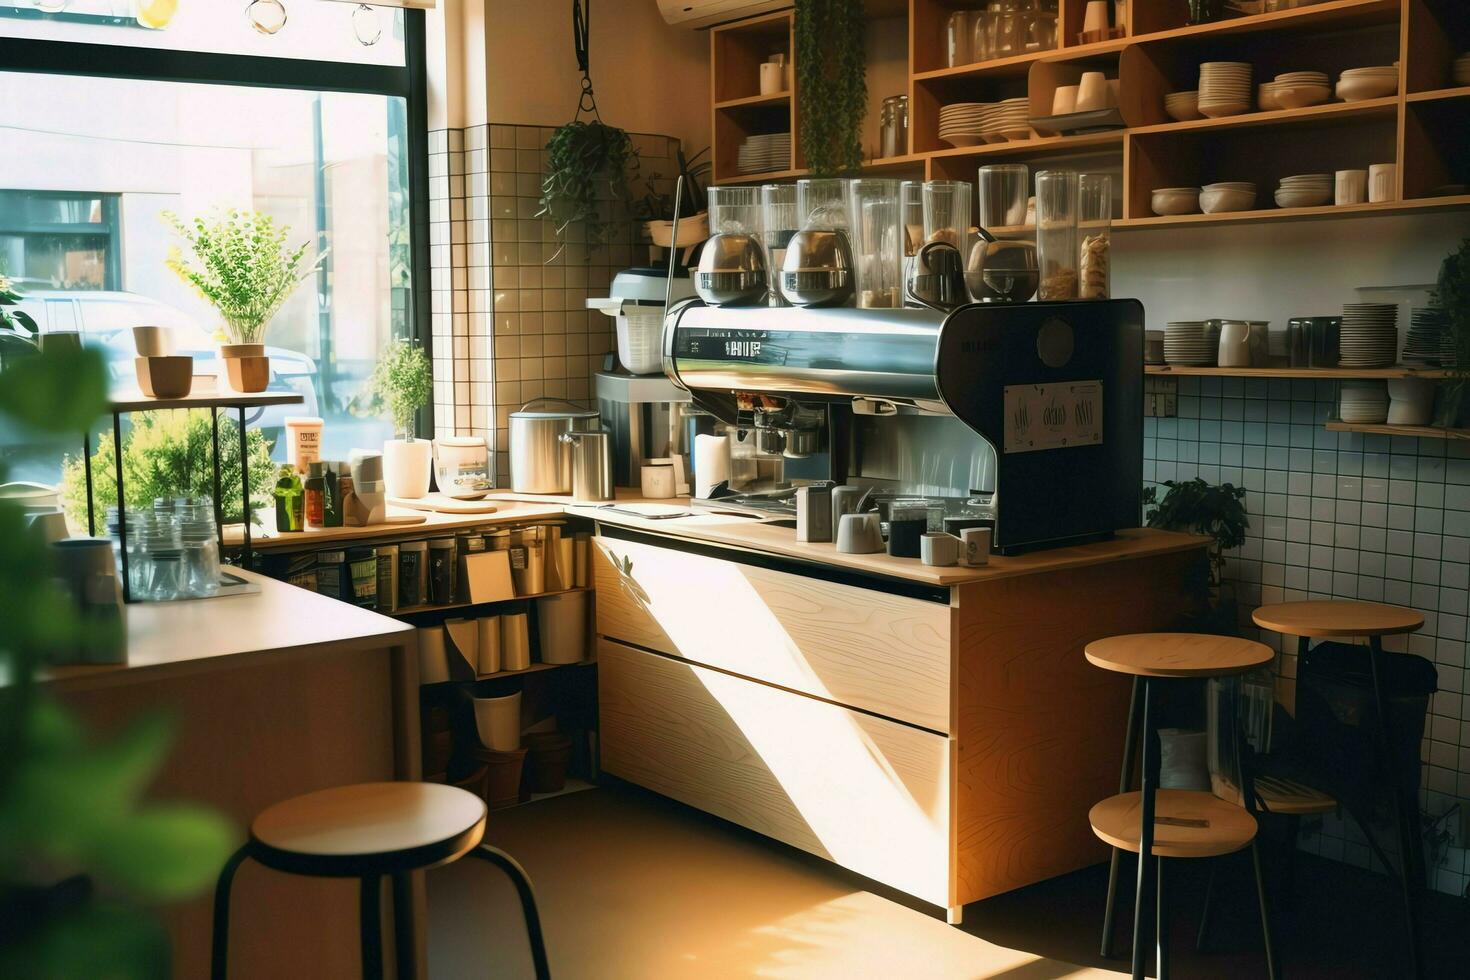 inuti rena kök av en modern restaurang eller mini Kafé med matlagning redskap och små bar disken begrepp förbi ai genererad foto